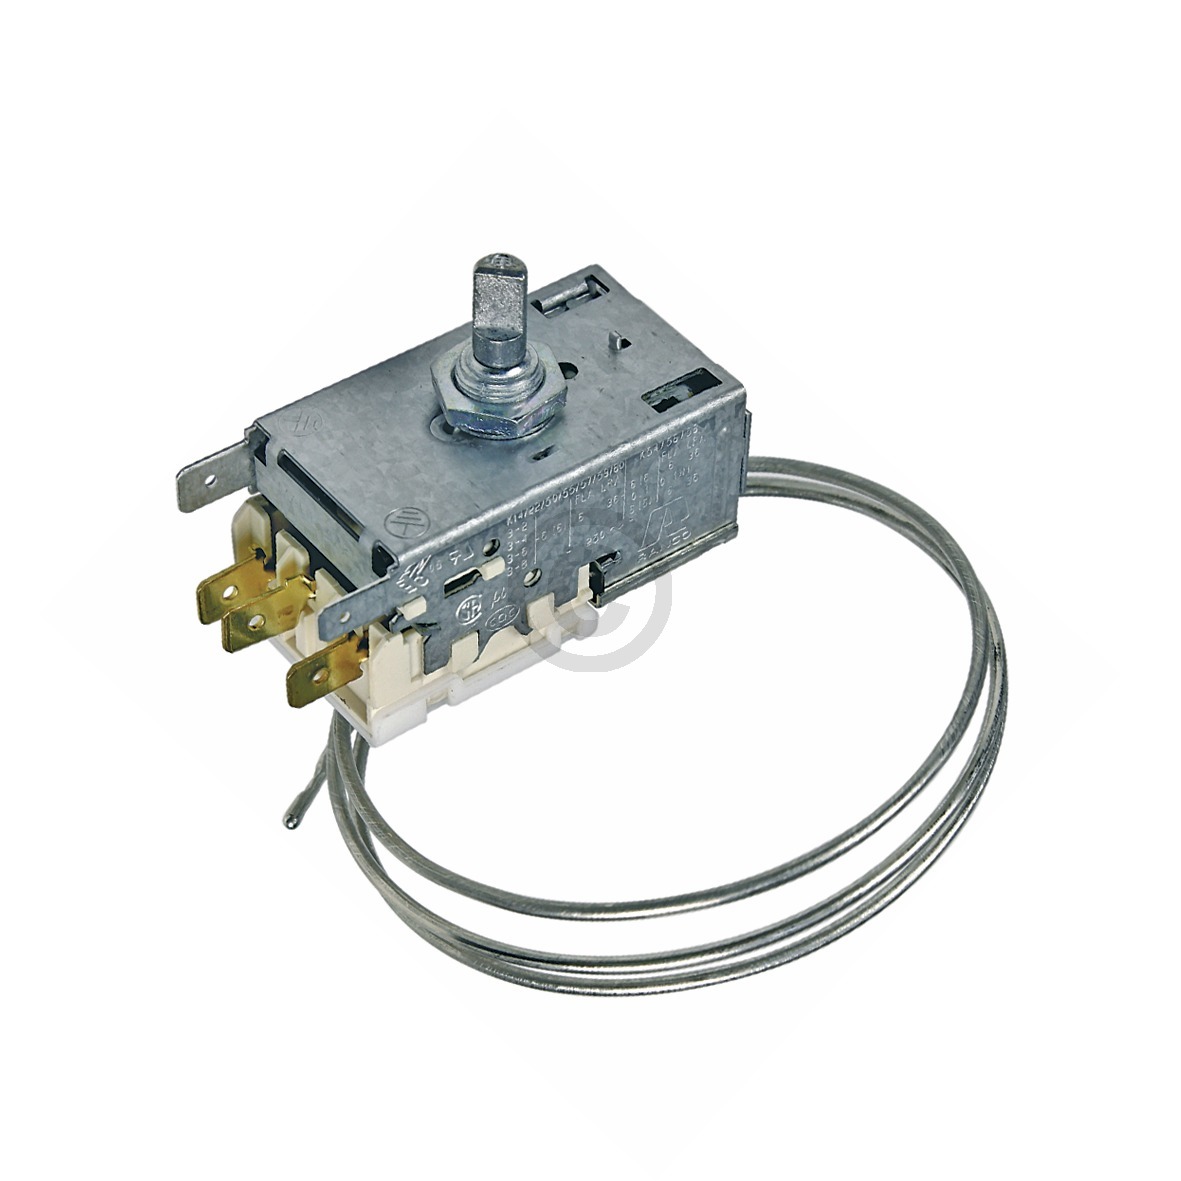 Thermostat K59-L1805 Ranco 770mm Kapillarrohr 3x6,3mm AMP für Kühlschrank